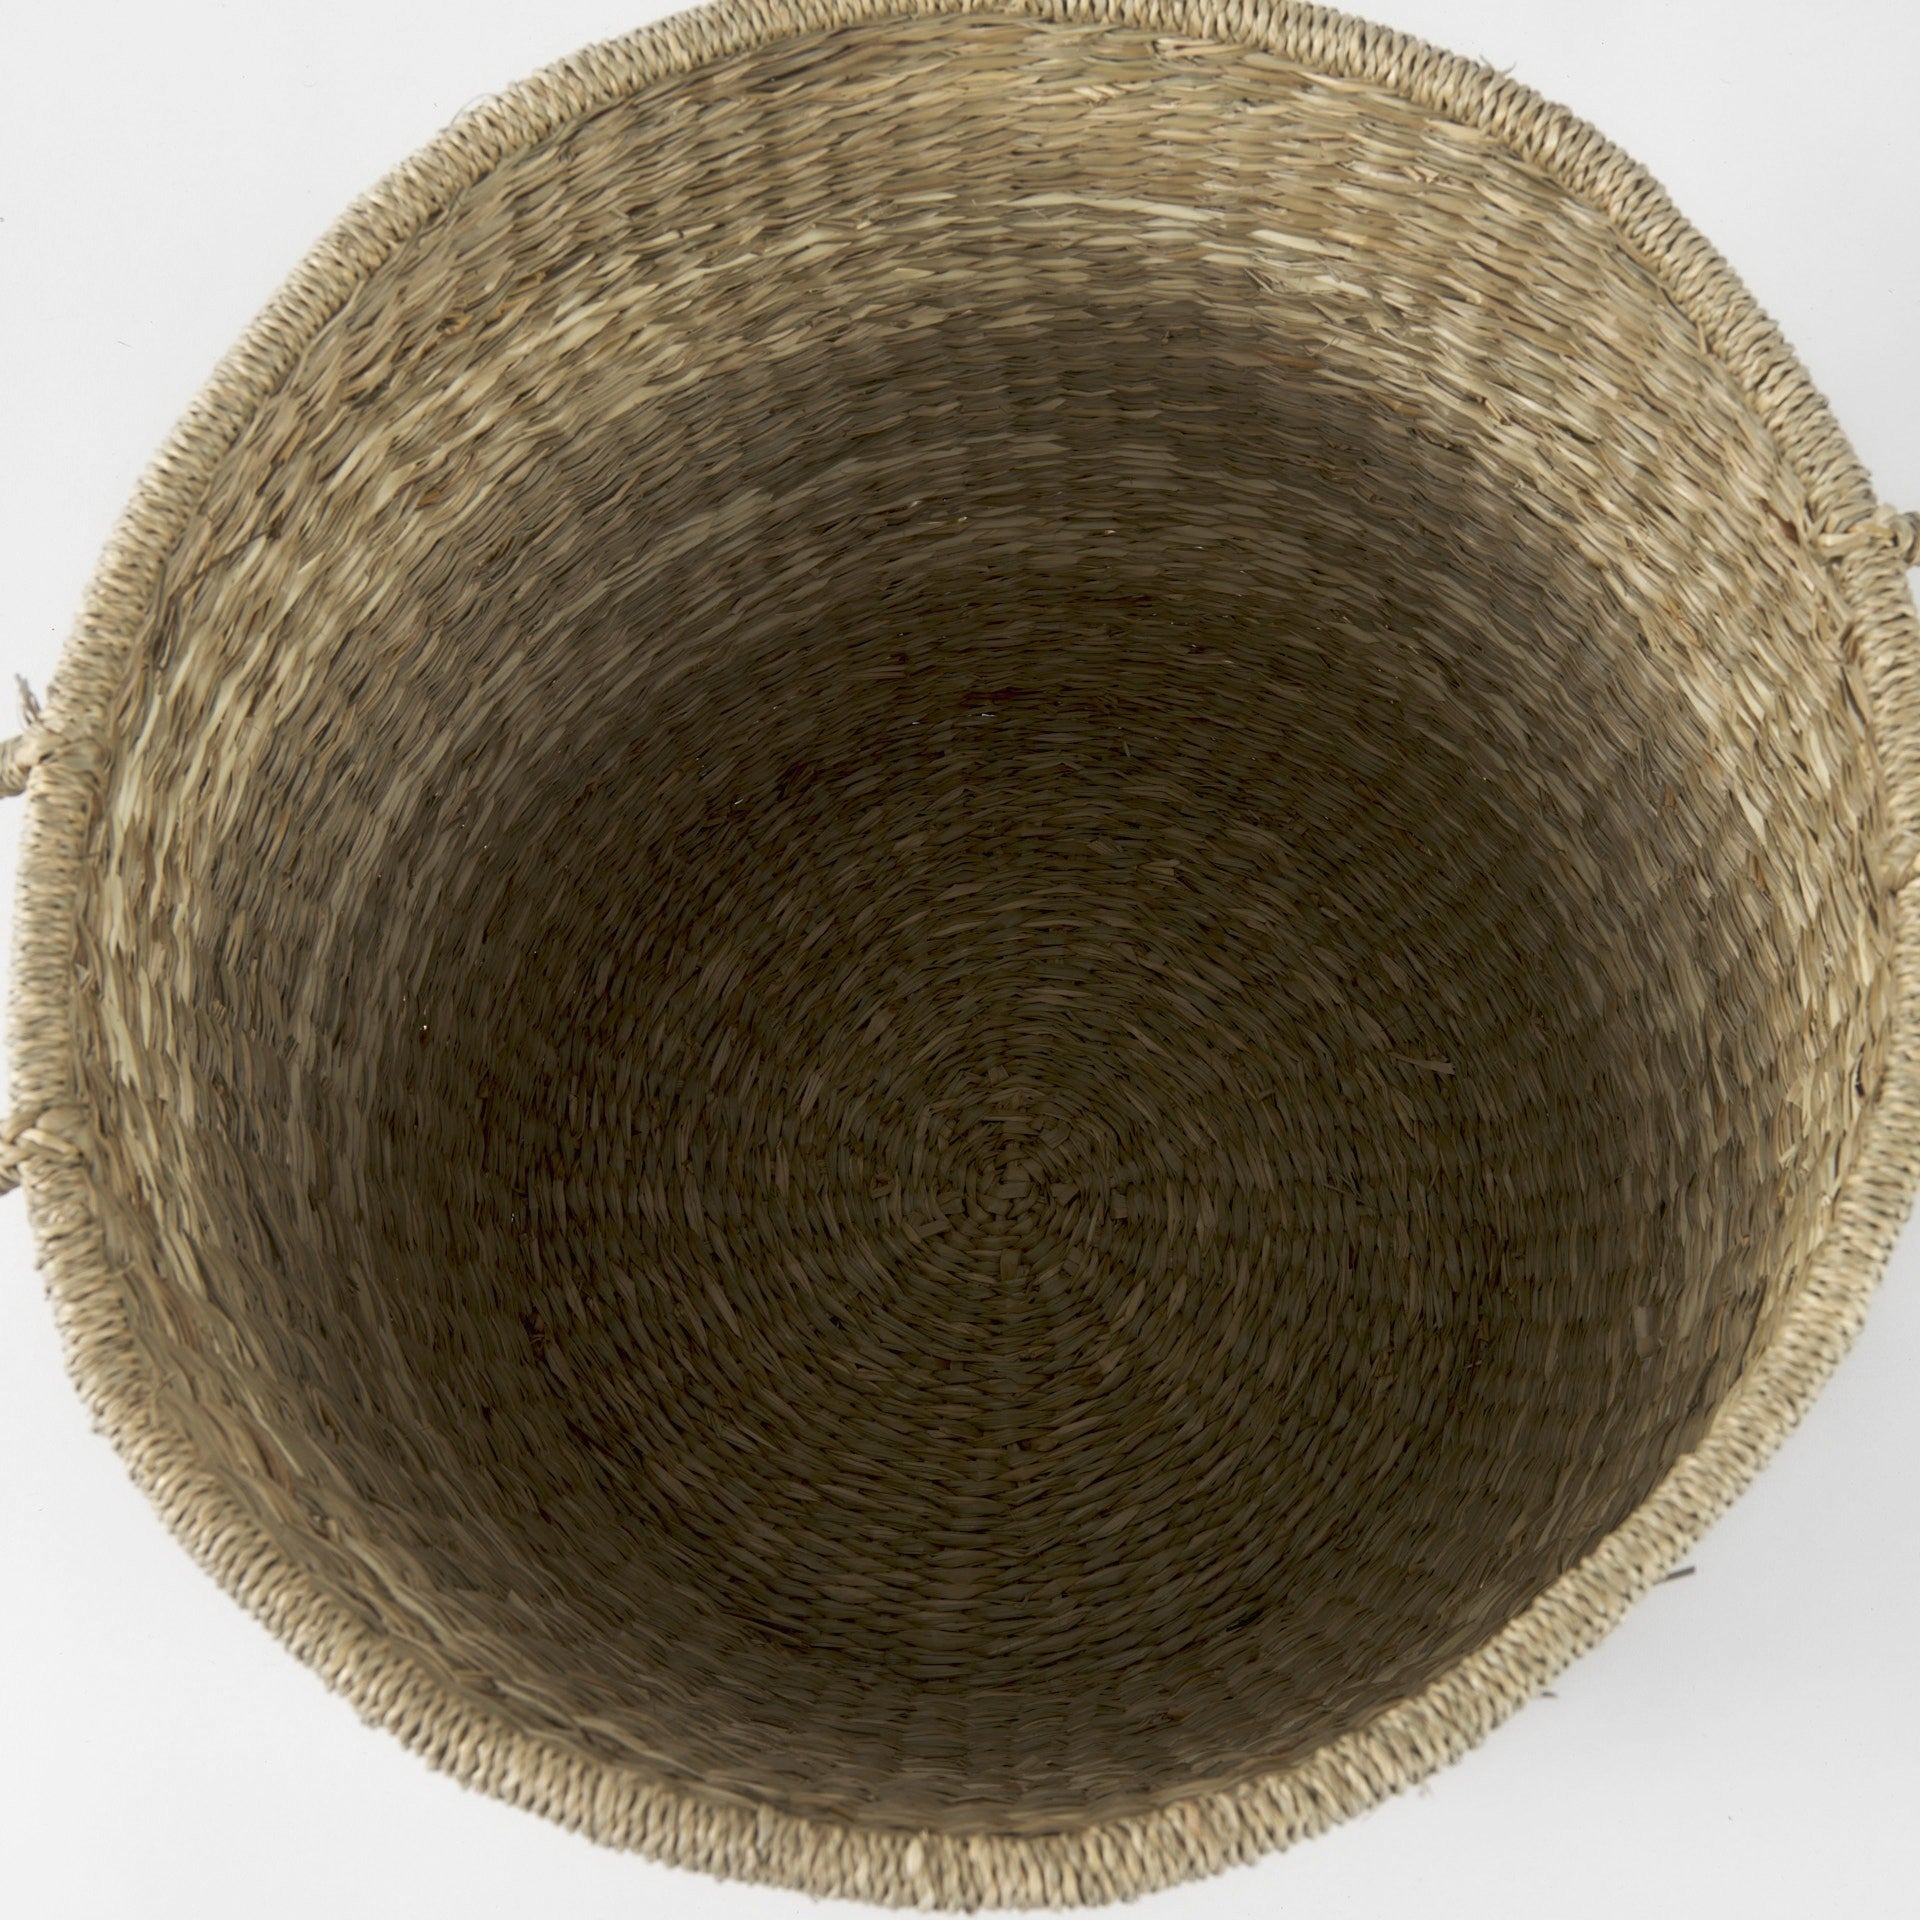 Set Of Two Round Wicker Storage Baskets